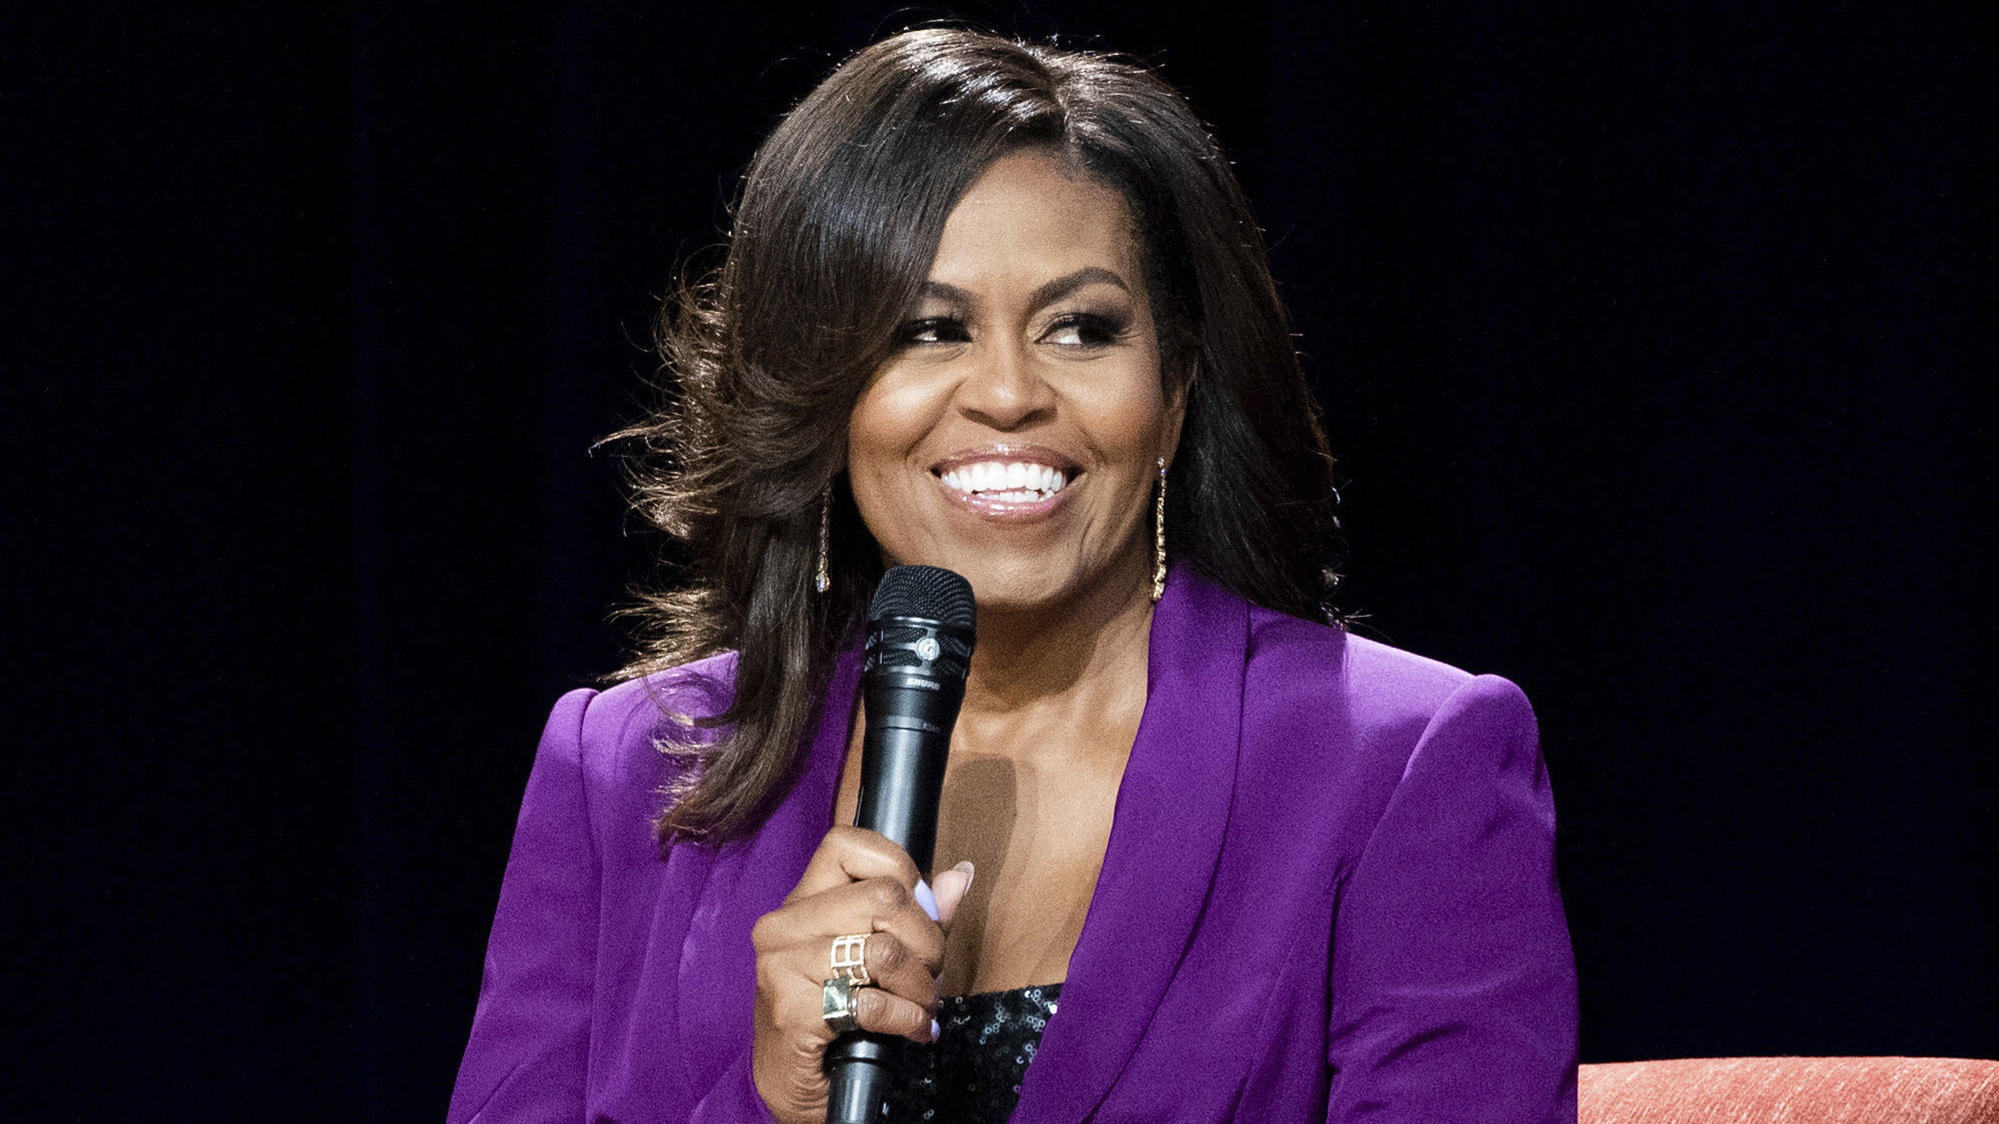 ARCHIV - 12.05.2019, USA, Atlanta: Die ehemalige First Lady Michelle Obama lächelt bei einem Auftritt. Michelle Obama wird in die «National Women's Hall of Fame» aufgenommen. Foto: Paul R. Giunta/AP/dpa +++ dpa-Bildfunk +++